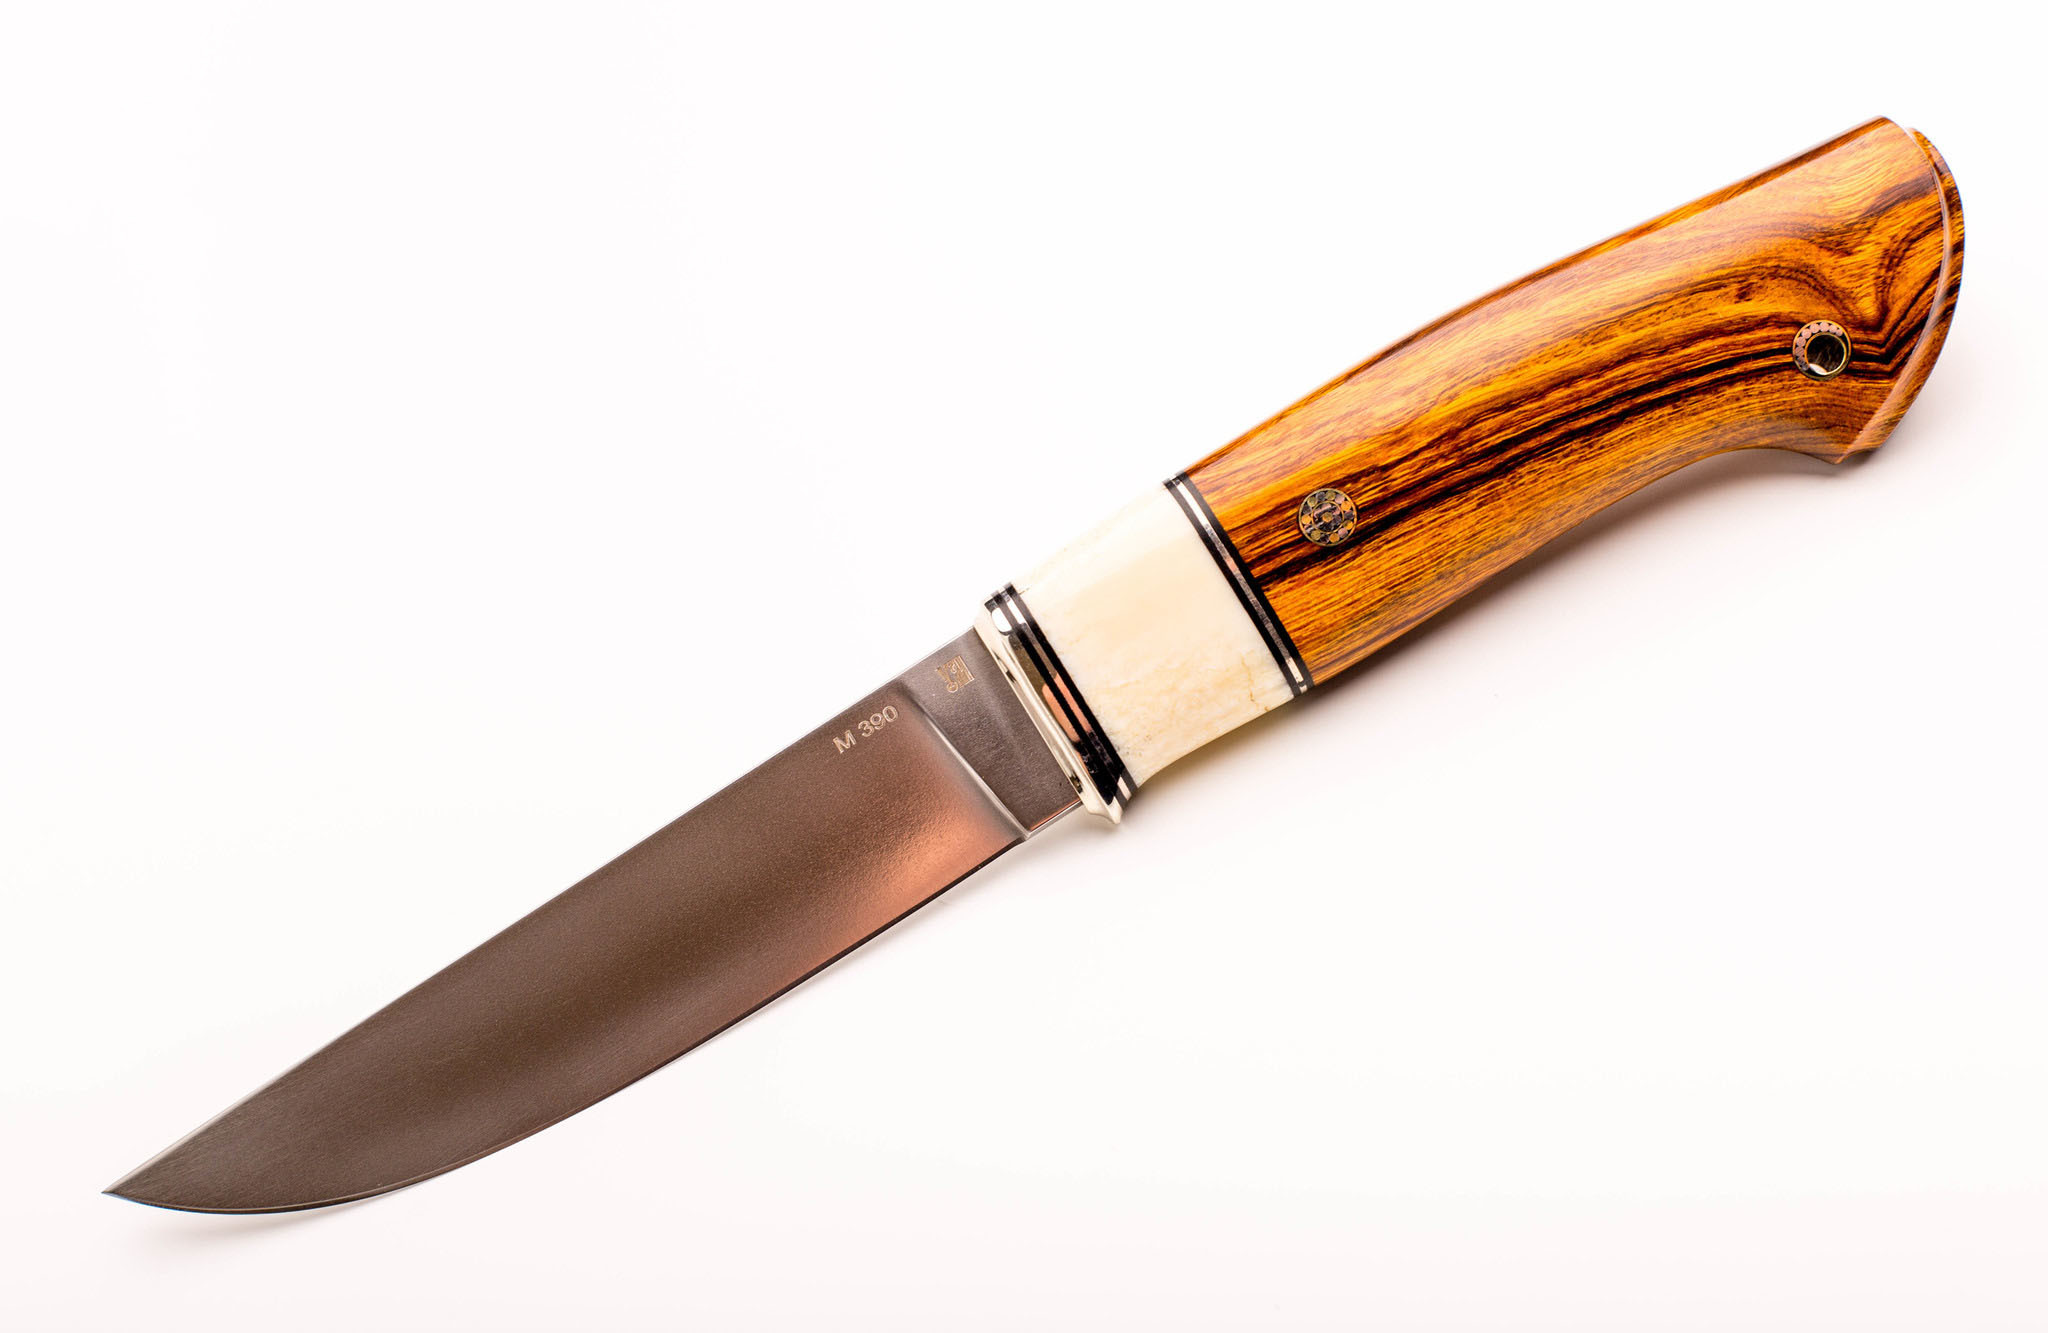 Нож Лидер 3, сталь M390, железное дерево, вставка рог лося - фото 1